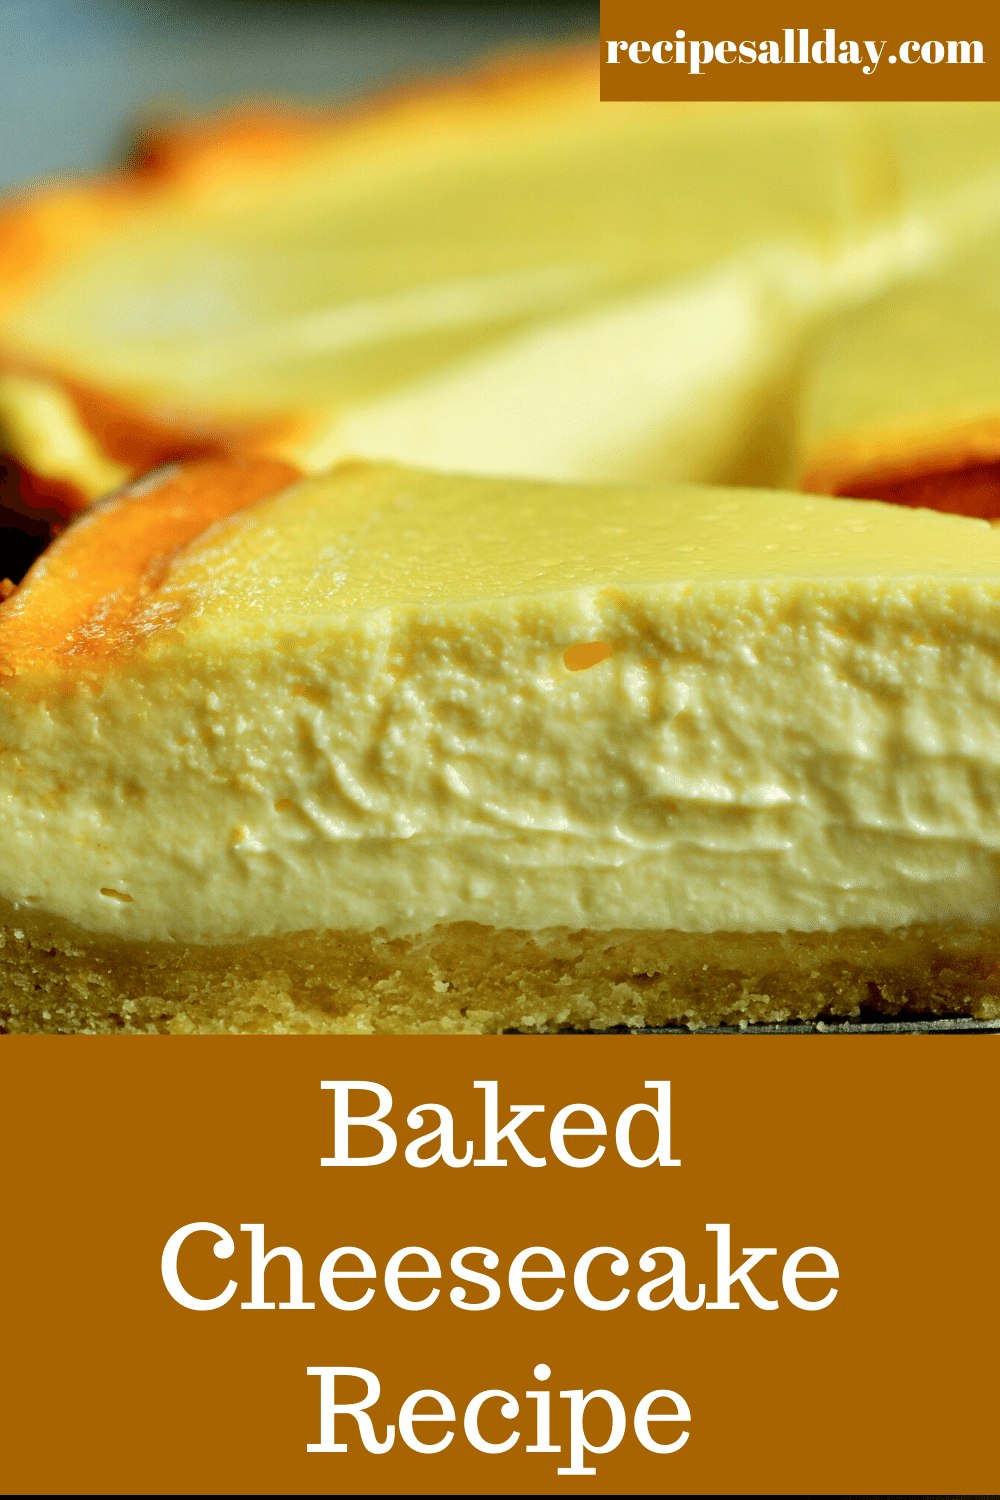 Baked Cheesecake Recipe - RecipesAllDay | Easy As 123